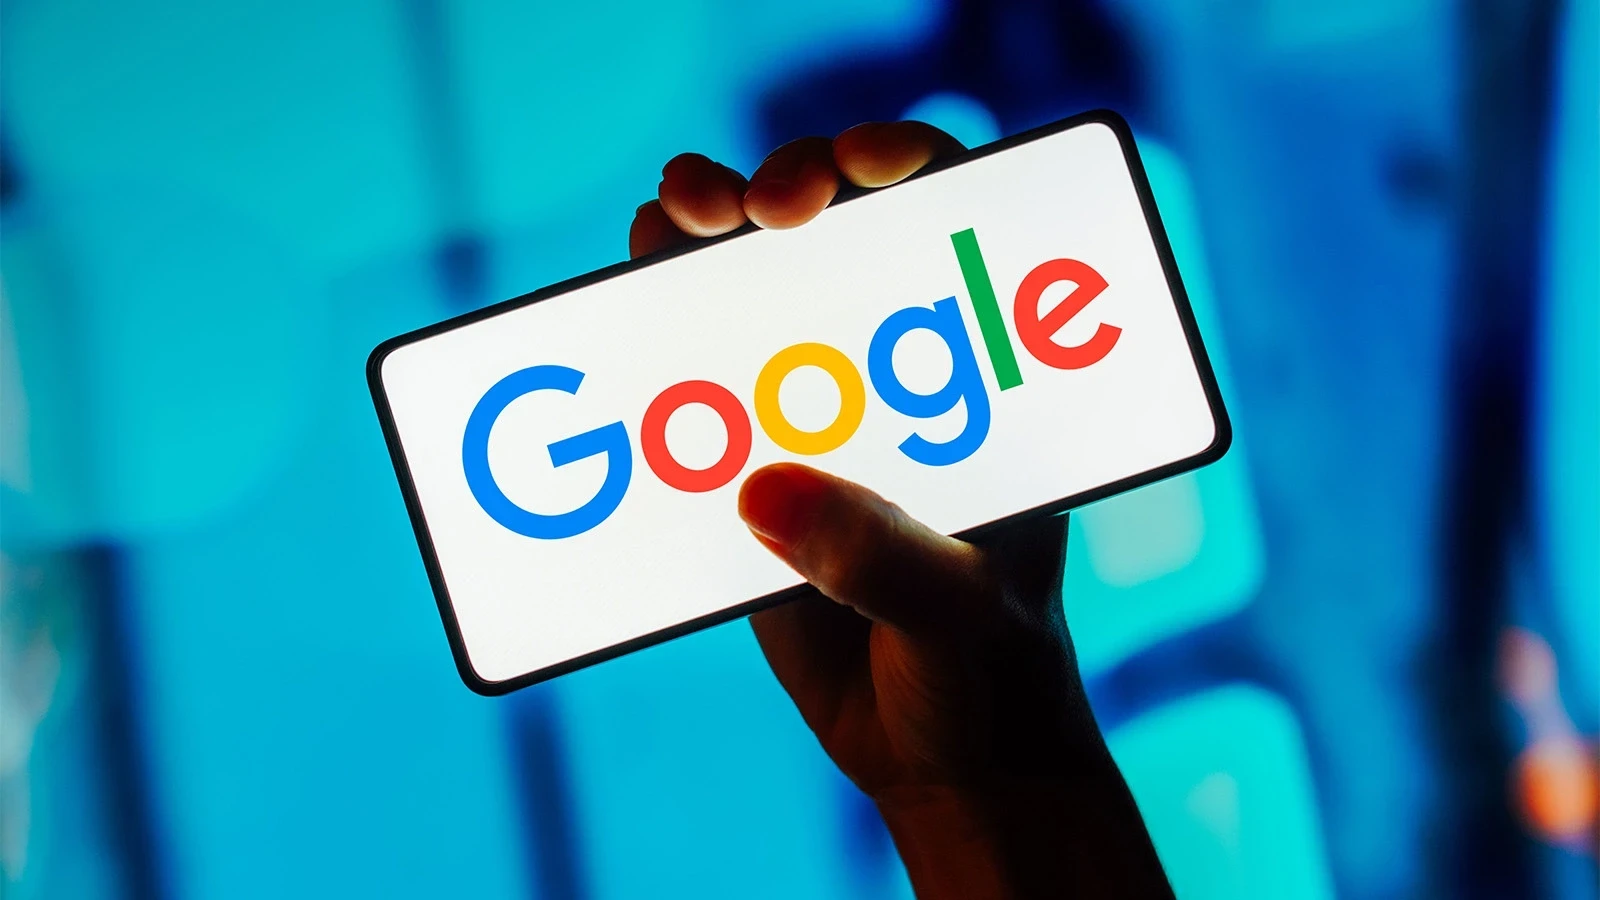 Ötən ay “Google”un Azərbaycanda bazar payı azalıb